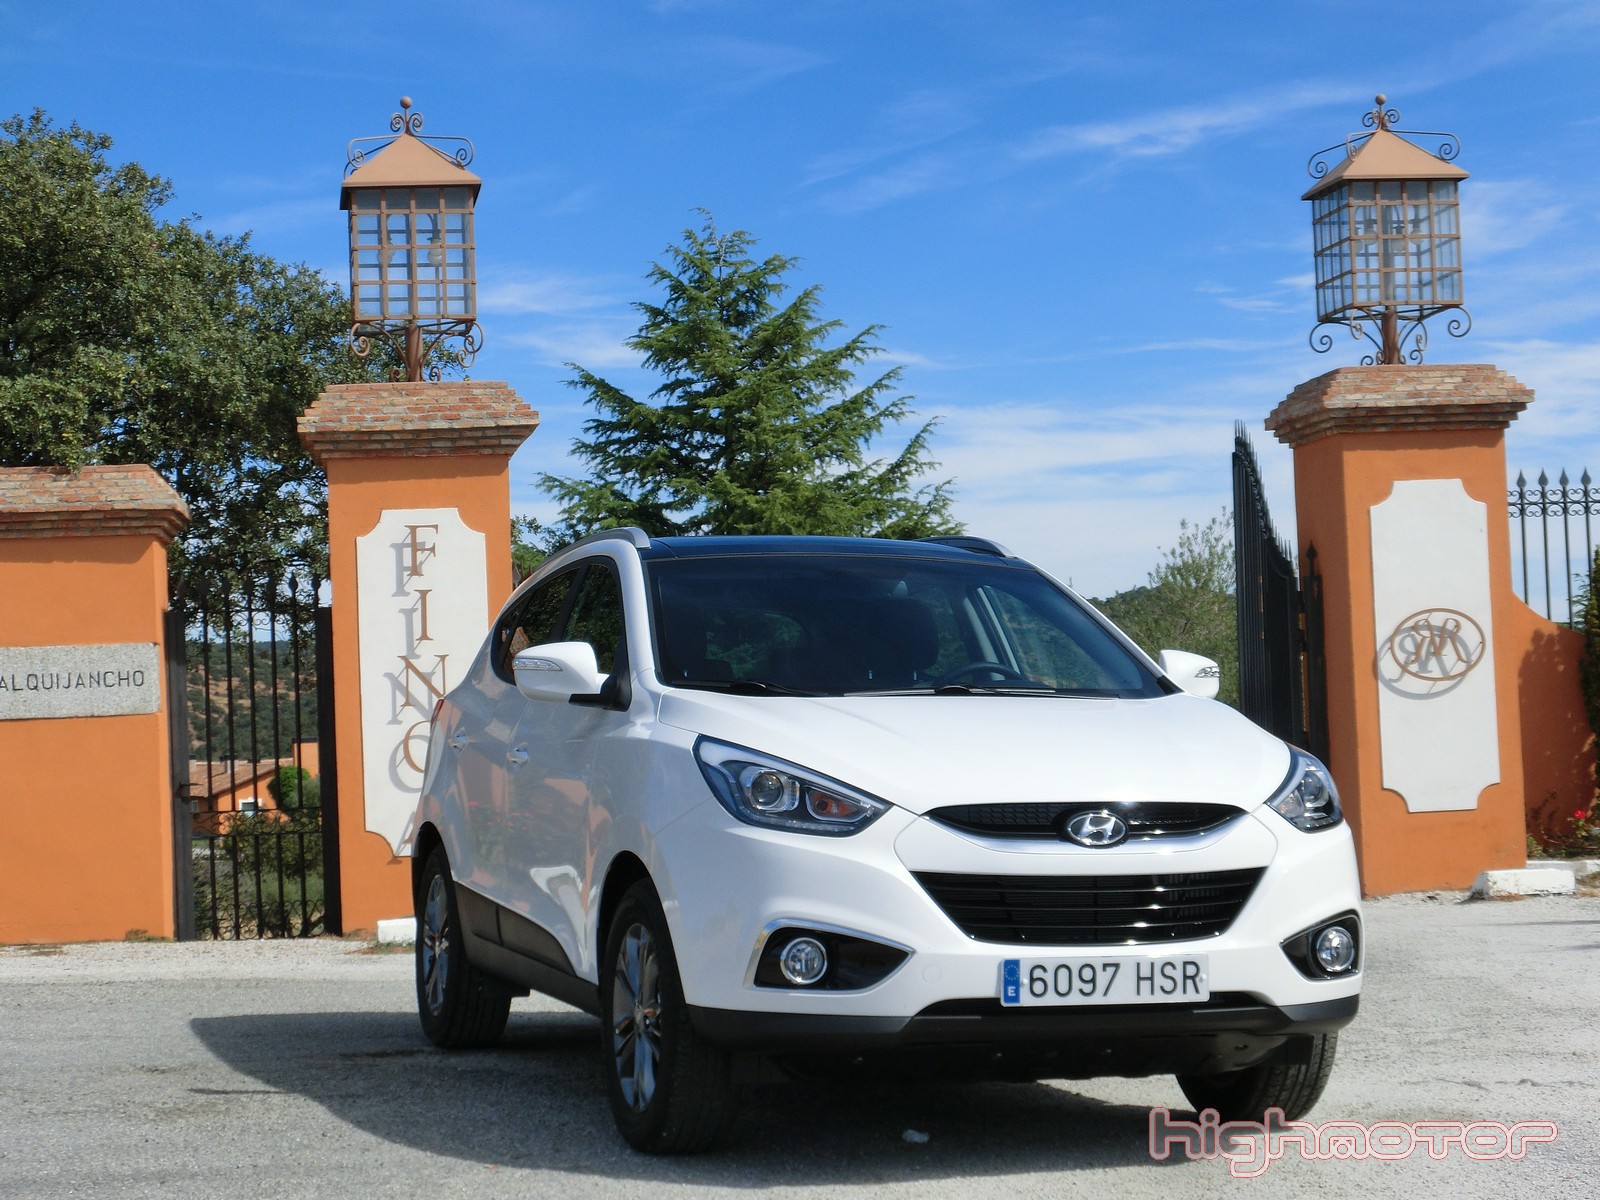 Nuevo Hyundai ix35: toma de contacto en Madrid